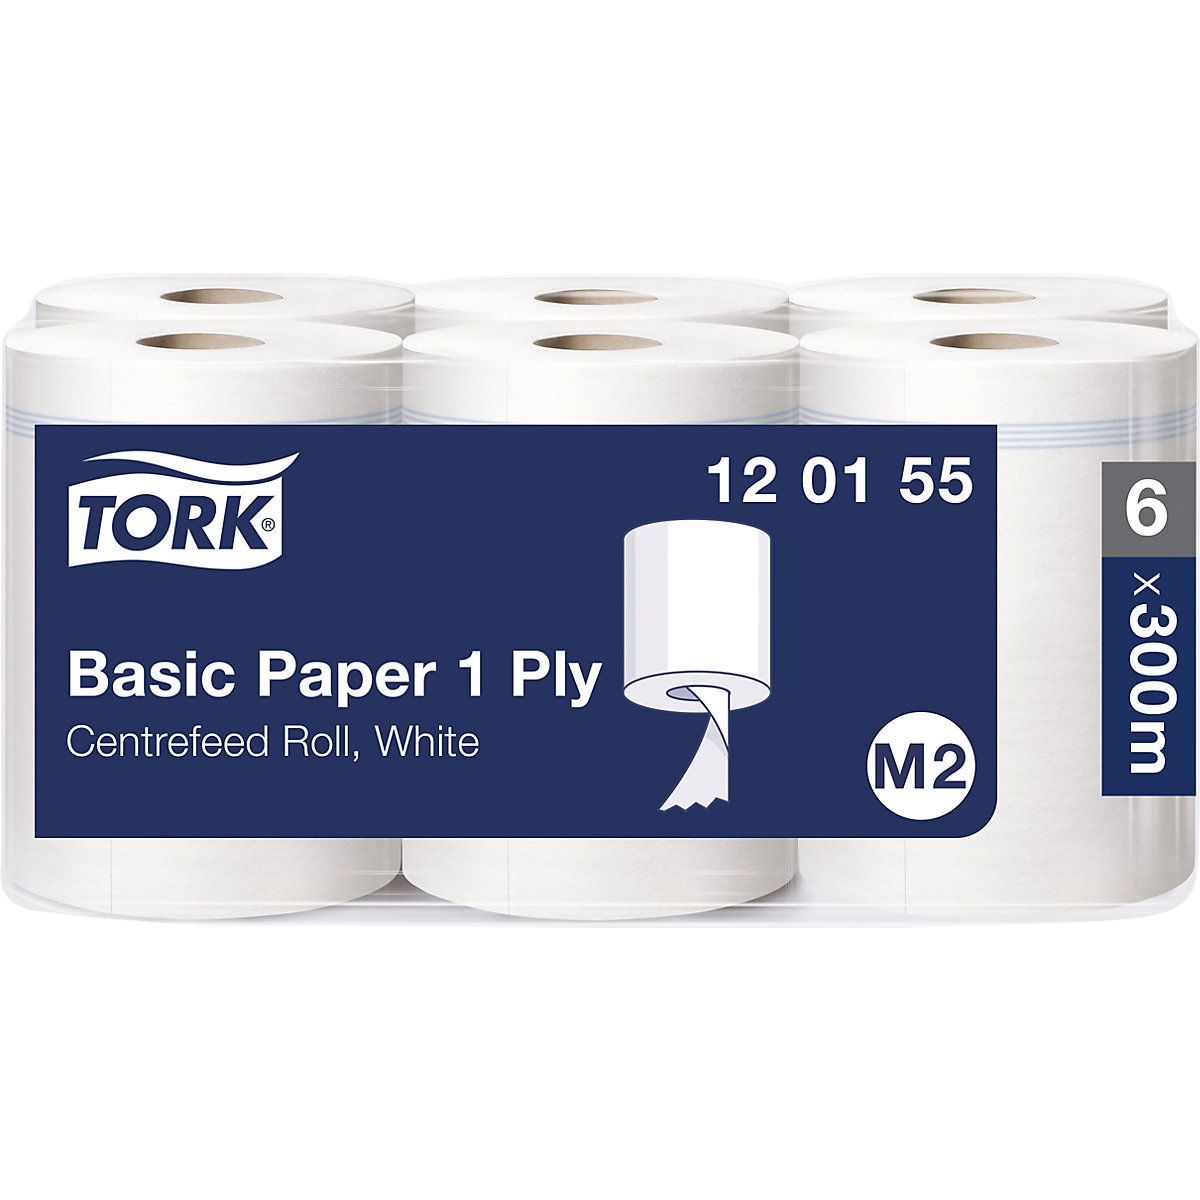 Standardne papirnate krpe, notranje odvijanje - TORK